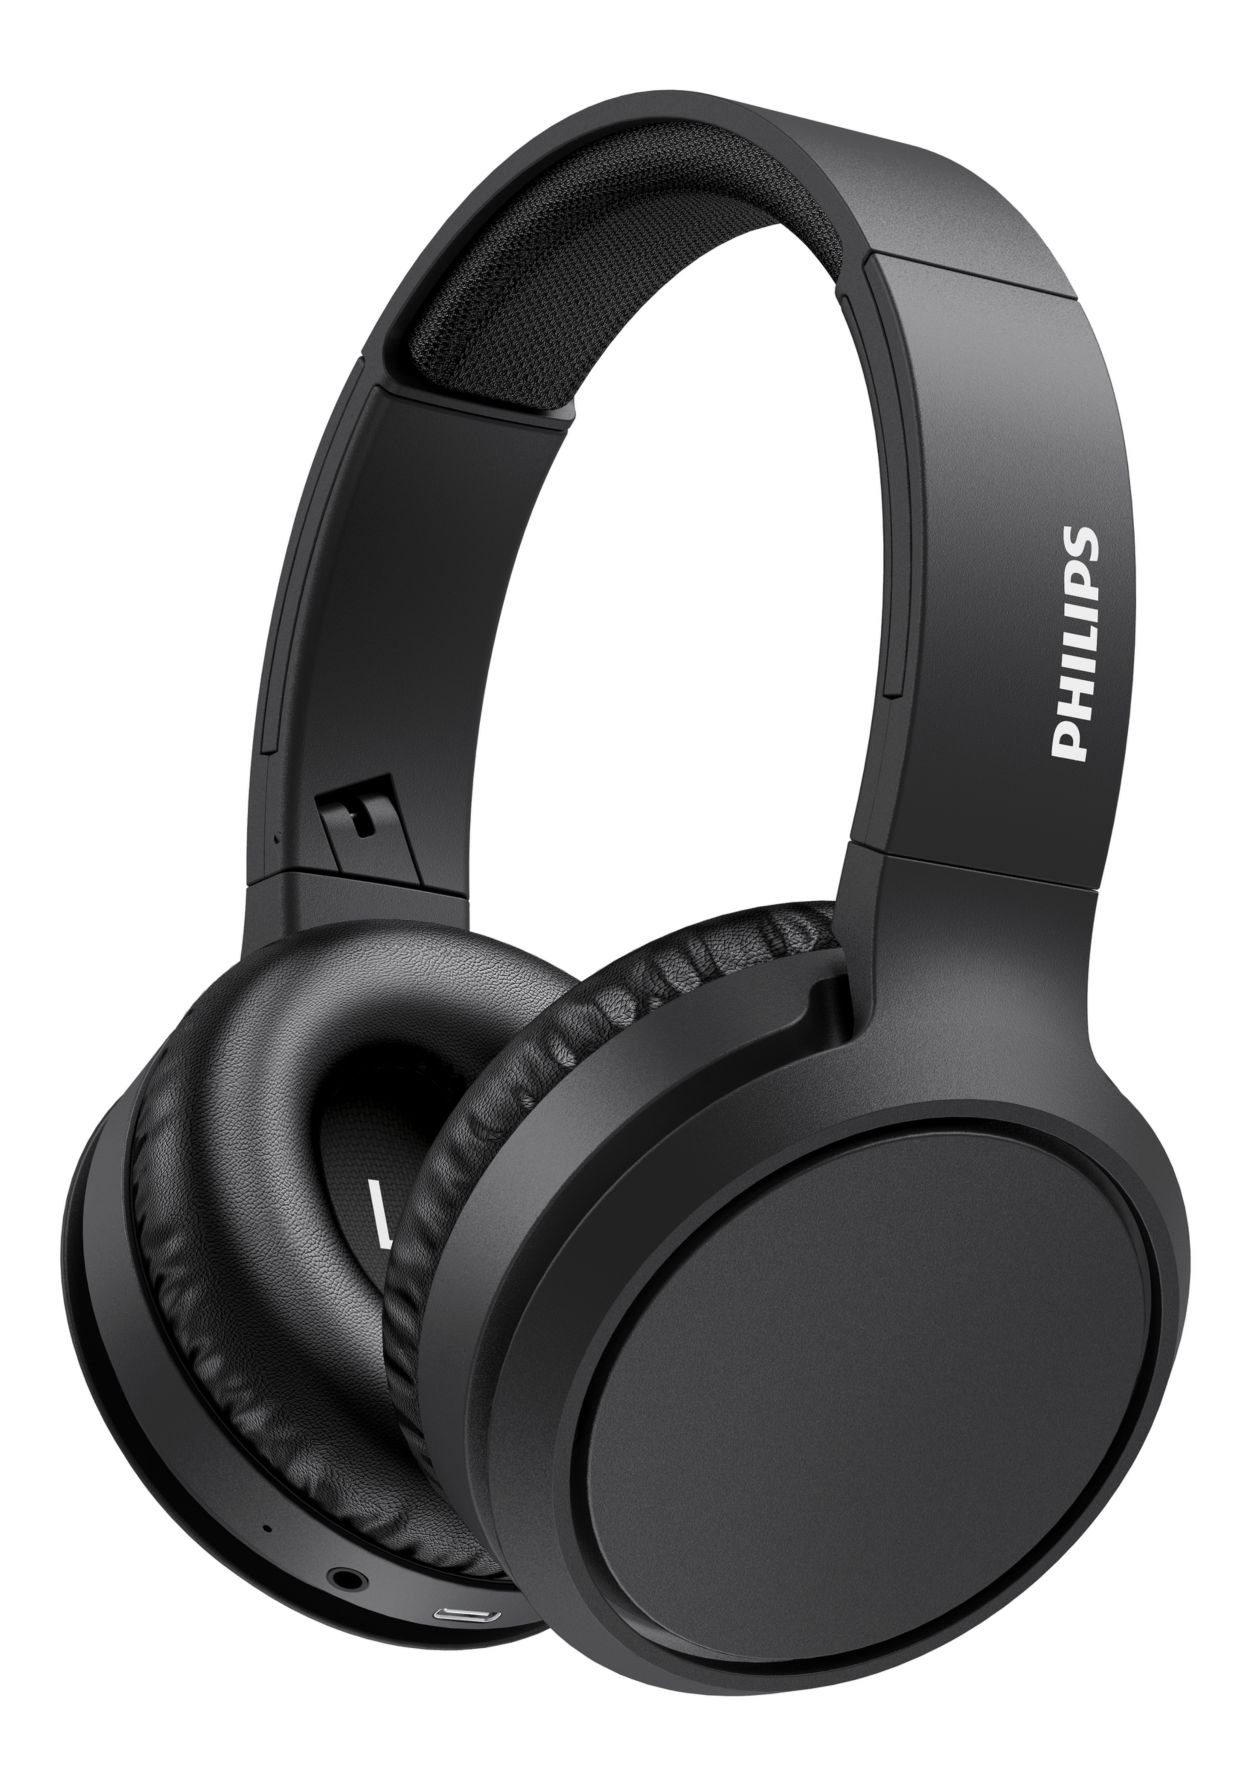 Onrecht insluiten Bedankt Wireless Headphone TAH5205BK/00 | Philips